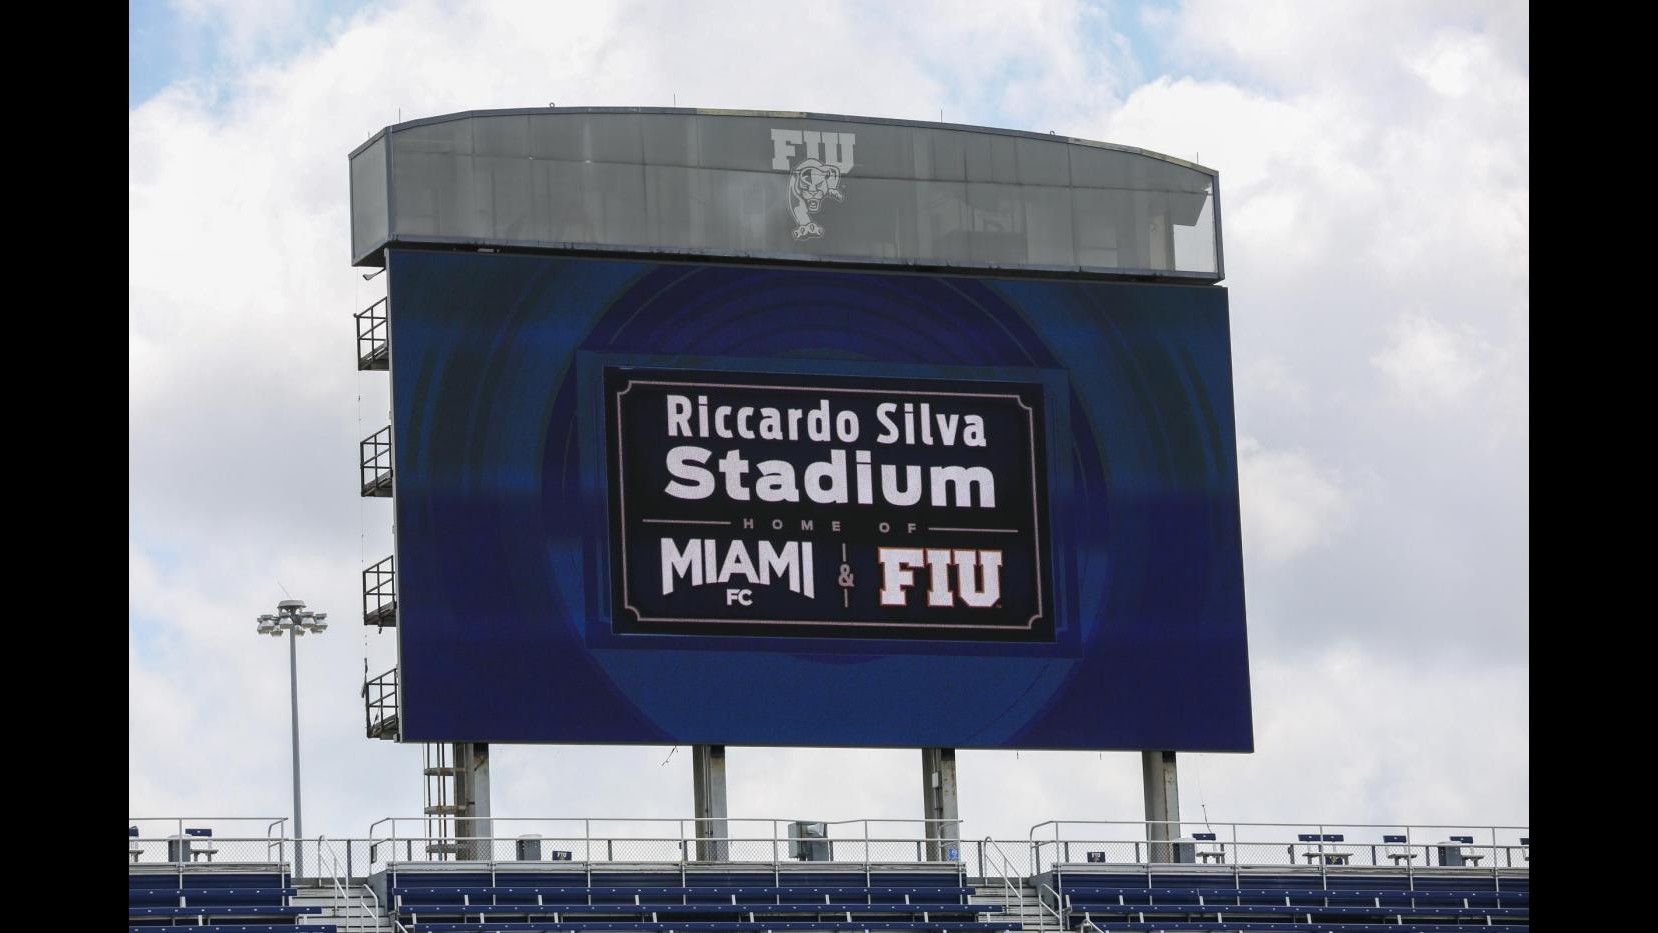 FOTO Miami FC, lo stadio rinnovato è ora il Riccardo Silva Stadium